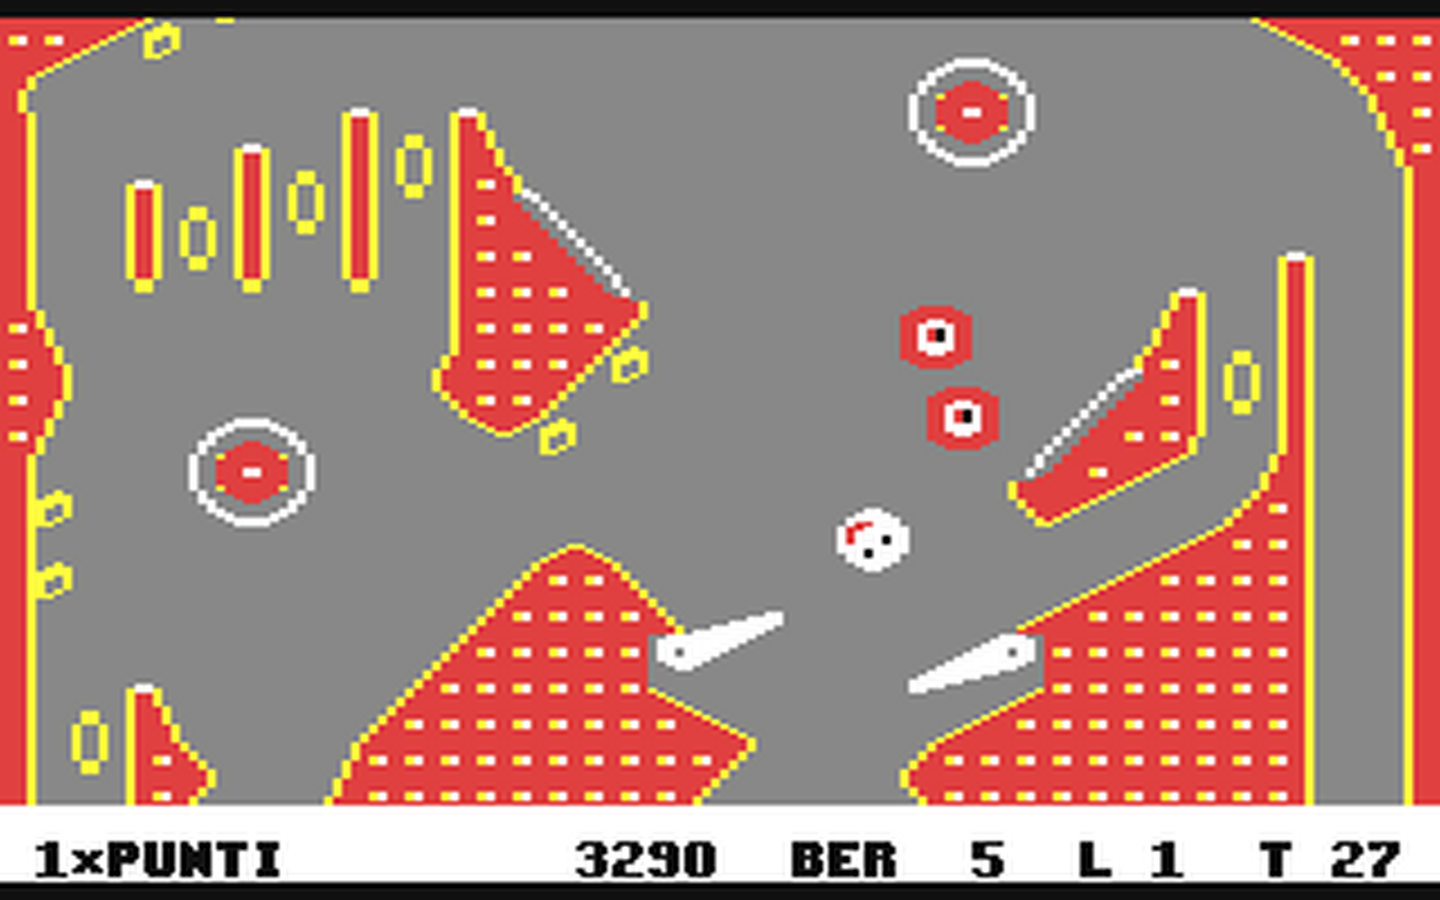 C64 GameBase Bomber Pubblirome/Game_2000 1986